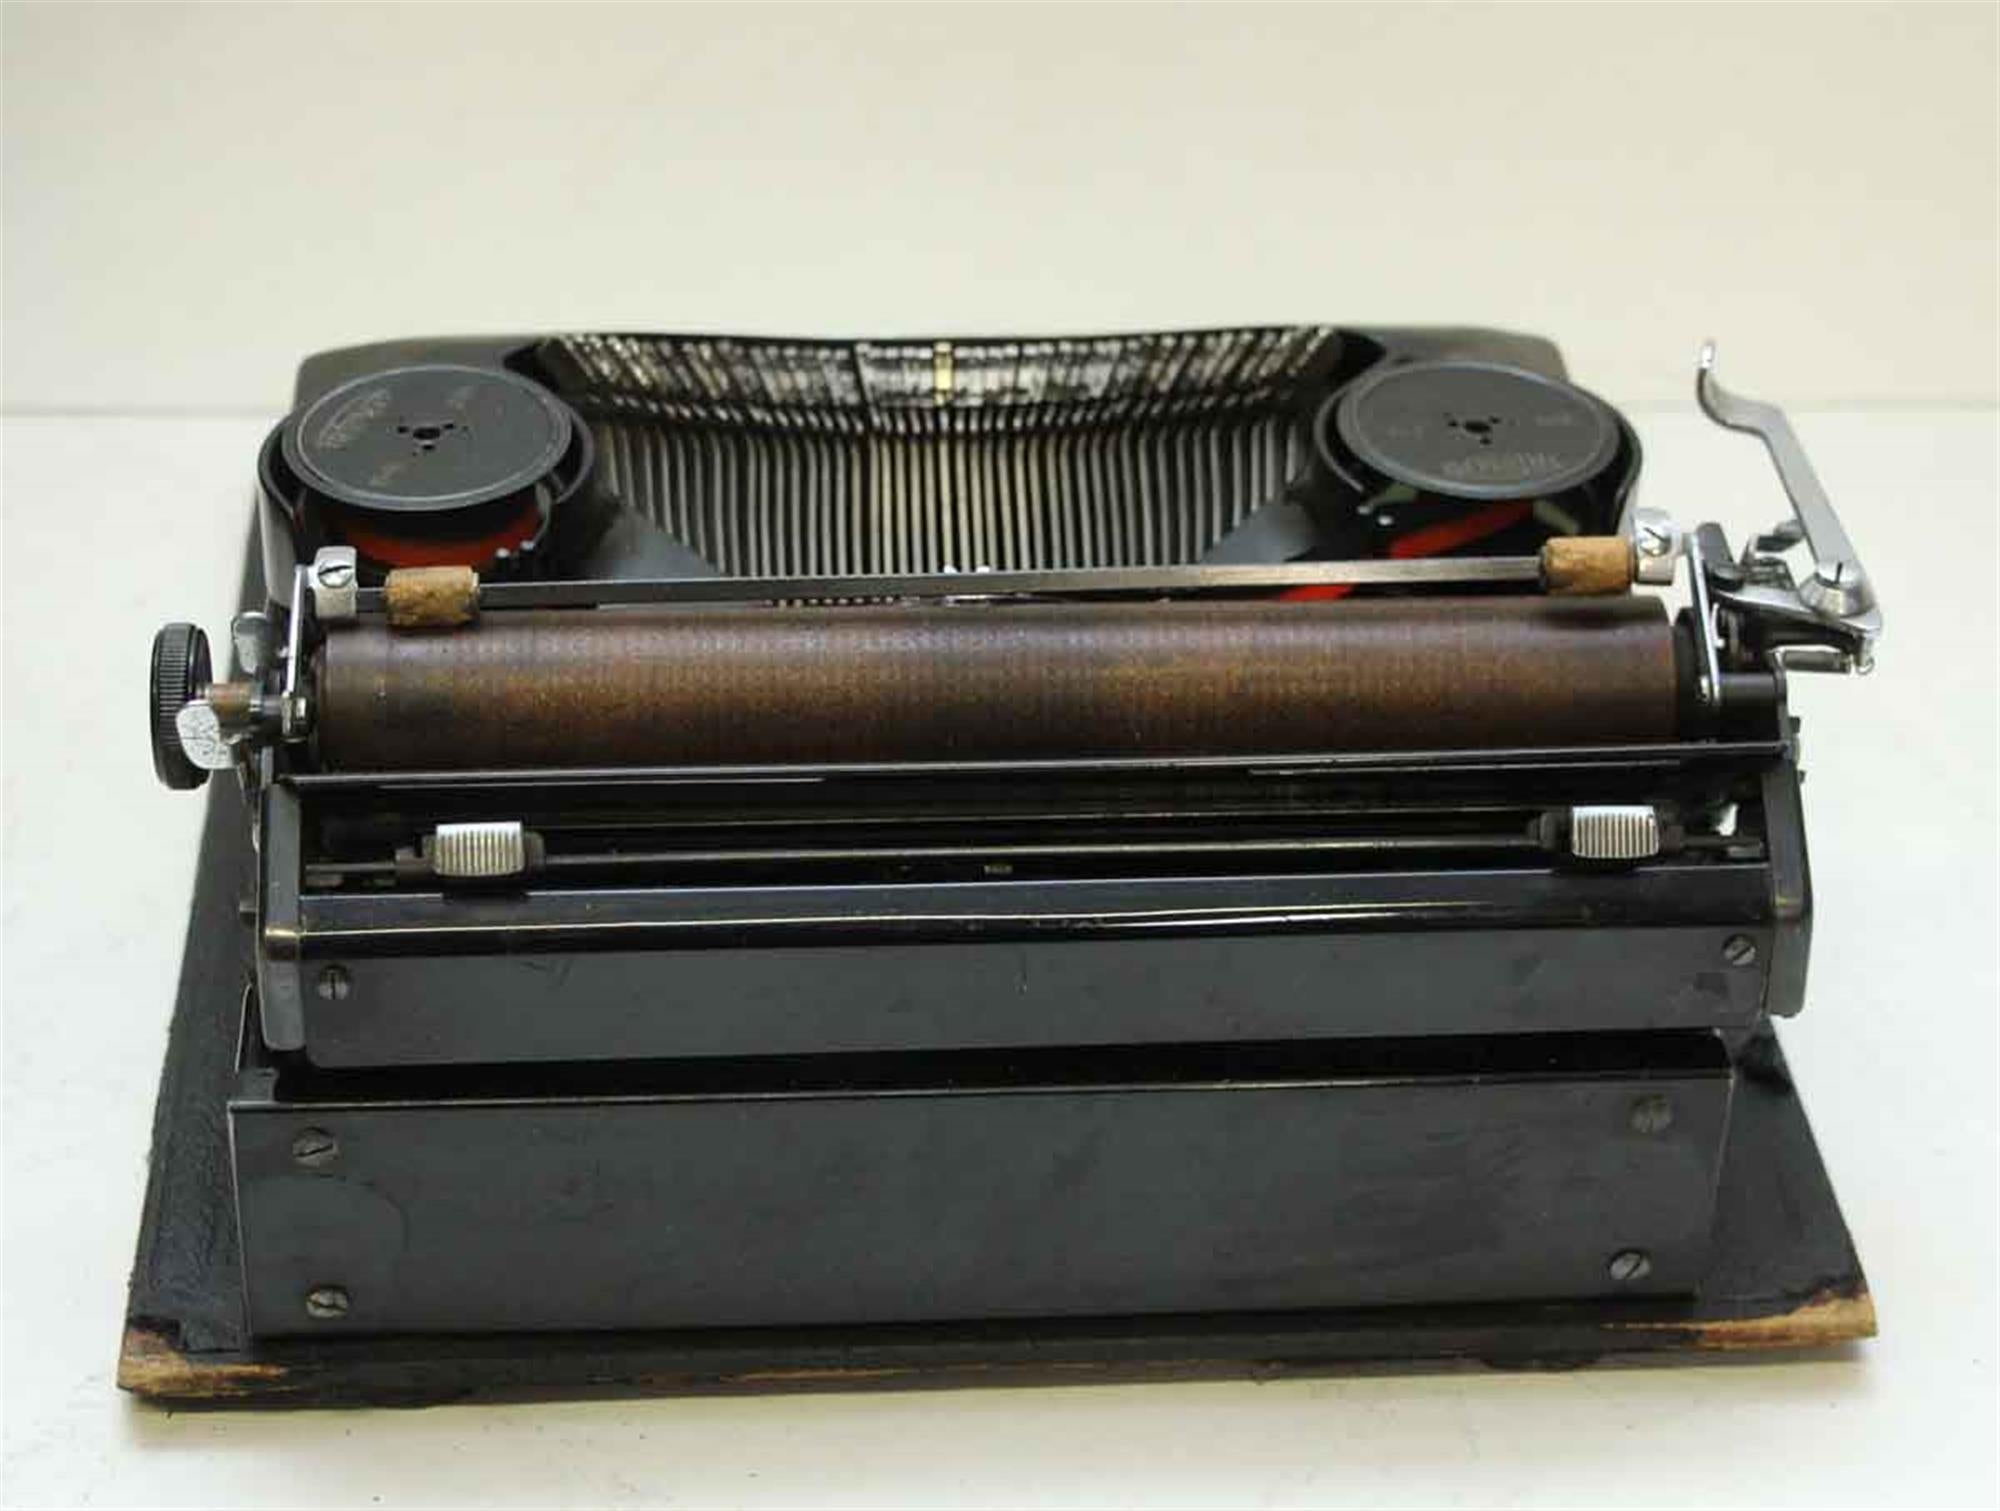 1940's typewriter